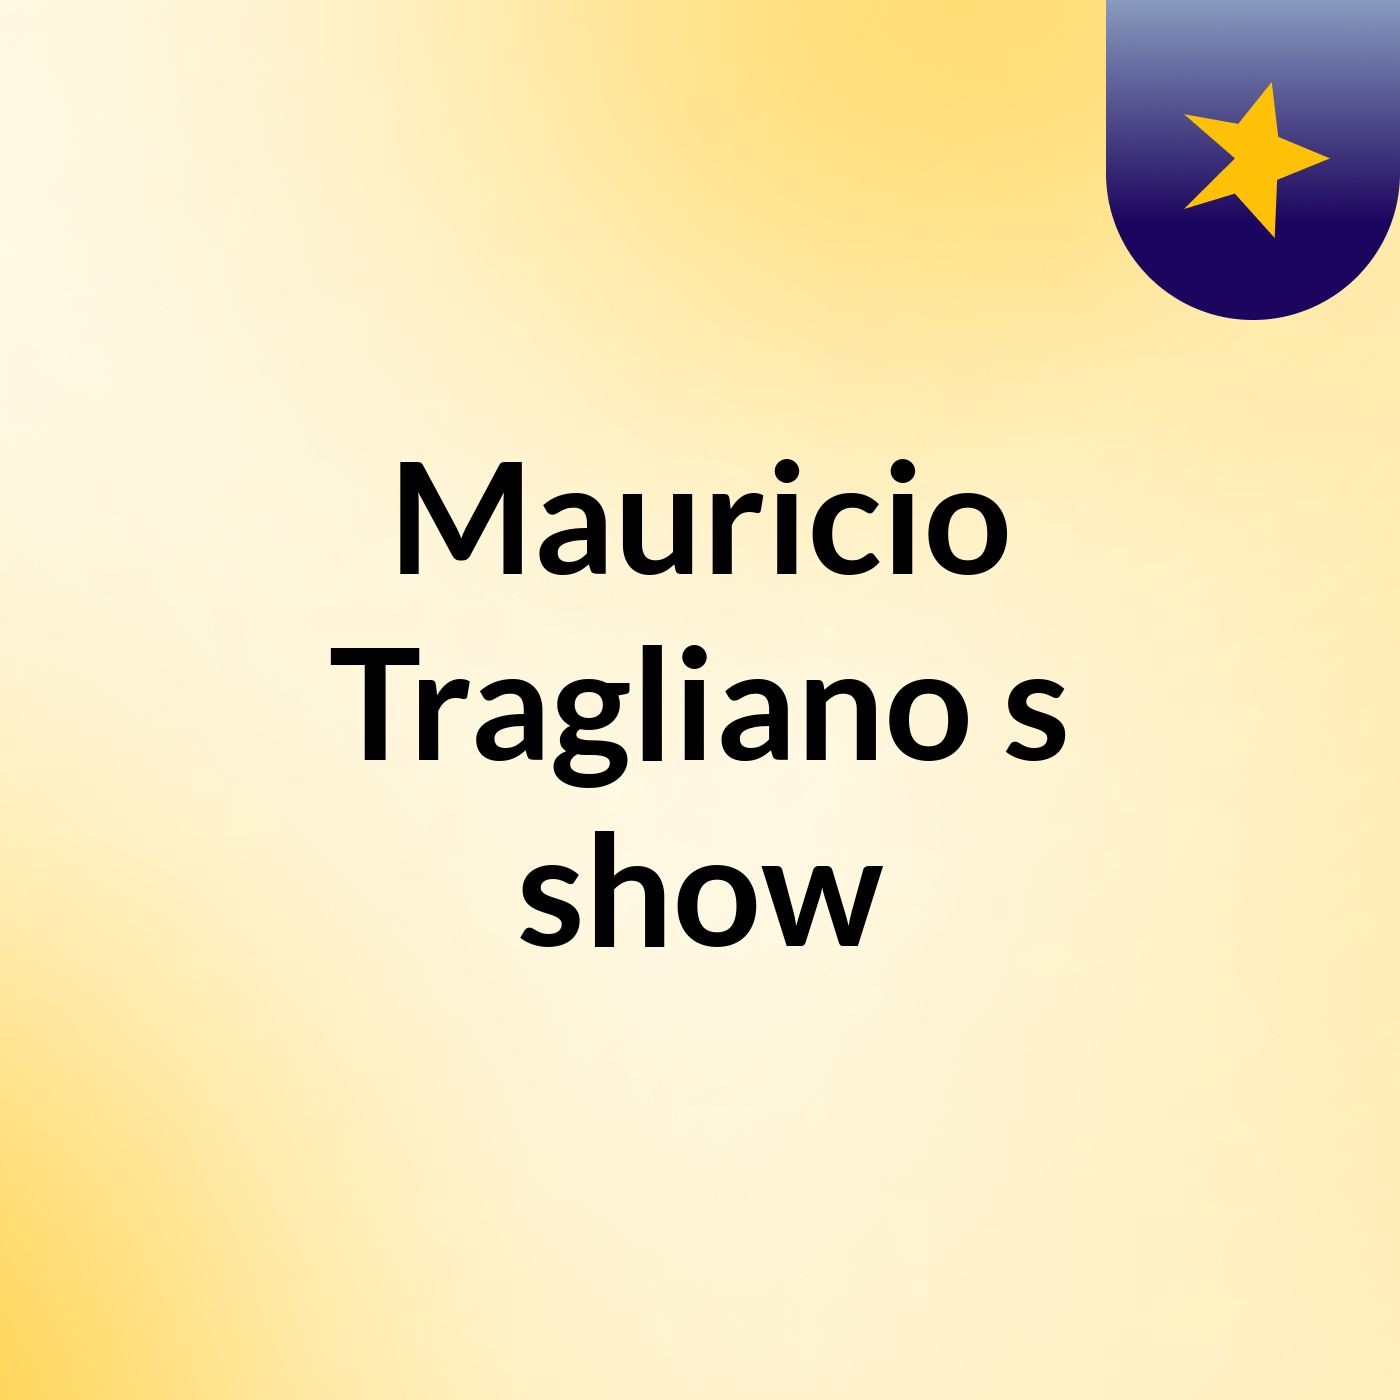 Mauricio Tragliano's show